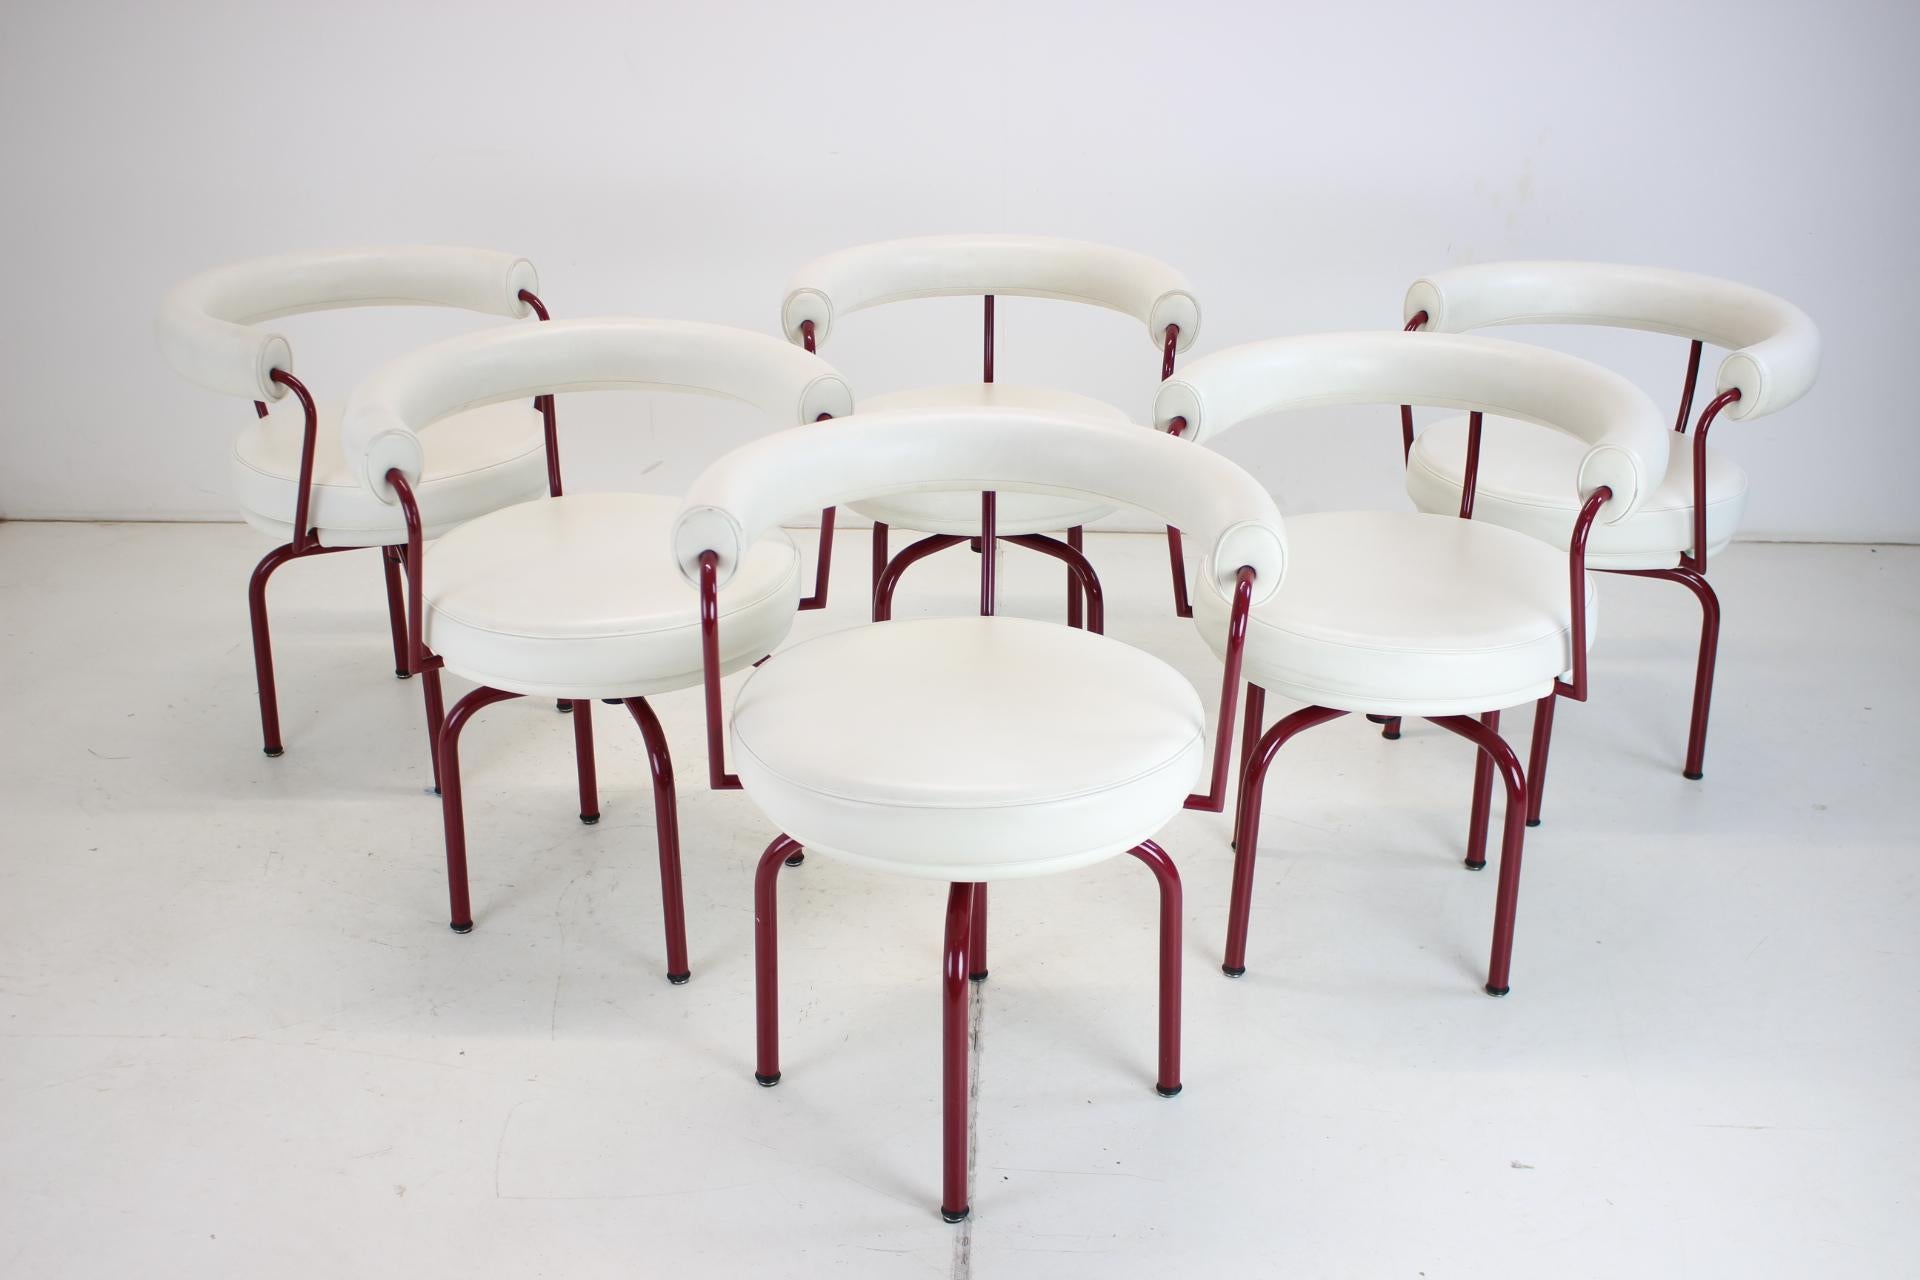  LC7-Stuhl, entworfen von Charlotte Perriand im Jahr 1927. Neu aufgelegt im Jahr 1978.
Hergestellt von Cassina in Italien.

Entworfen von Charlotte Perriand und Teil der Kollektion LC von Le Corbusier, Pierre Jeanneret und Charlotte Perriand.

Der